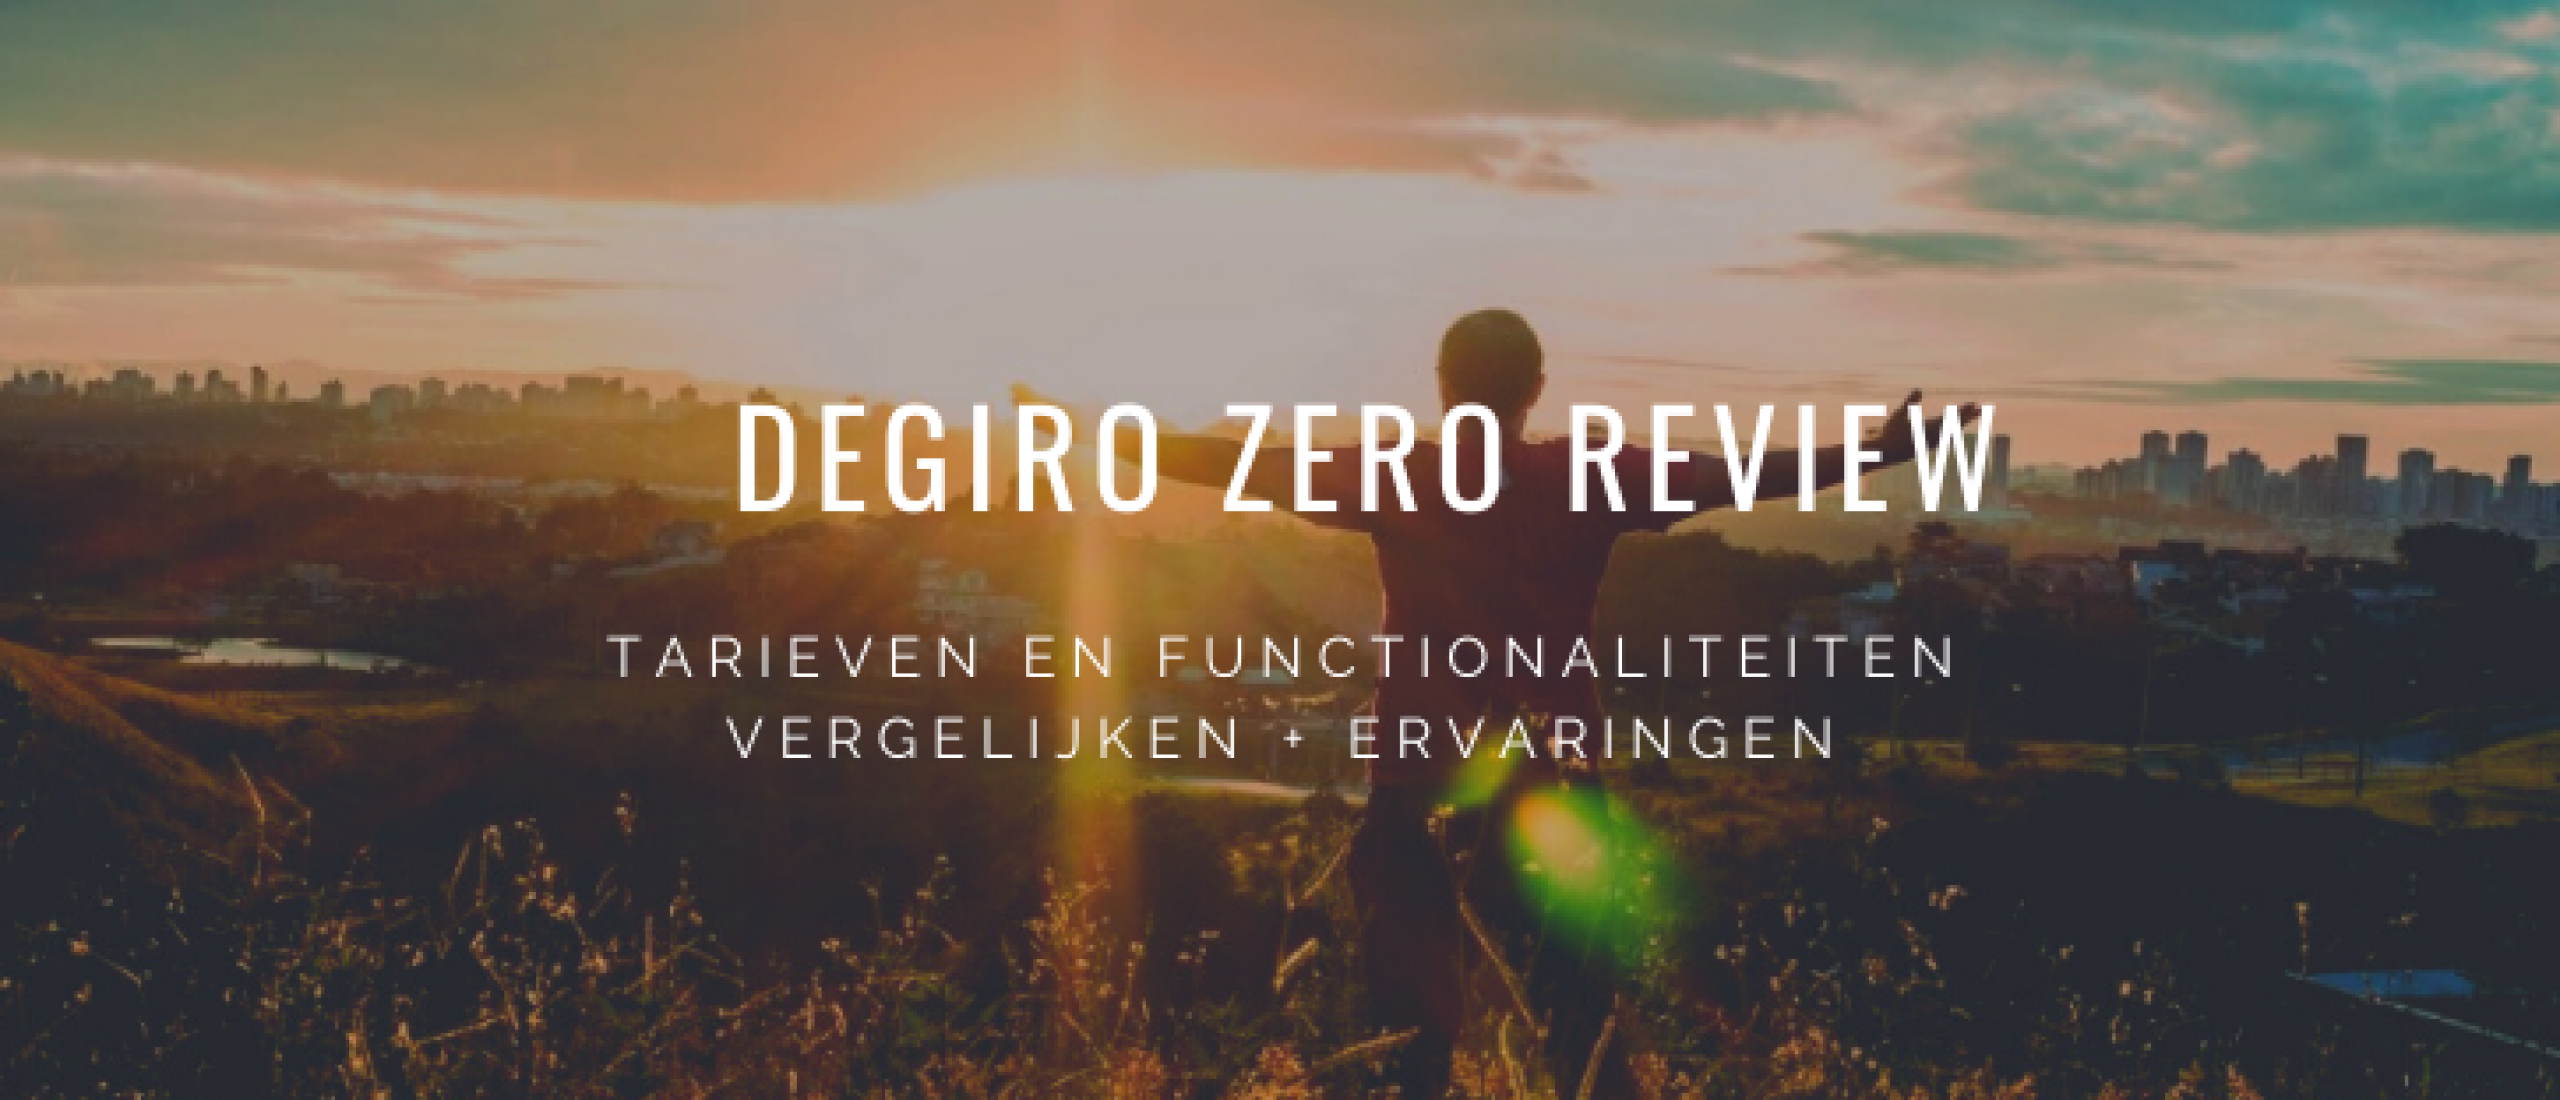 degiro-zero-review